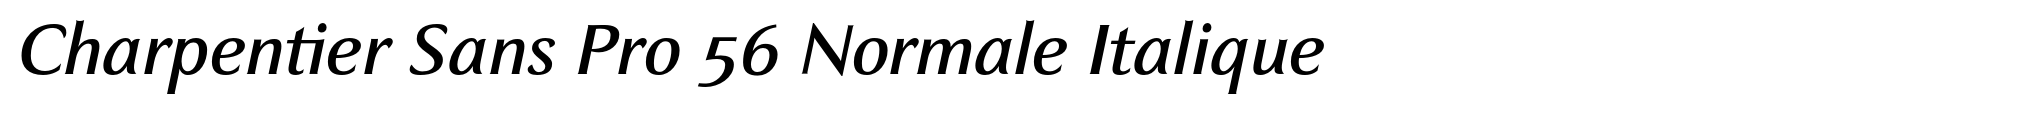 Charpentier Sans Pro 56 Normale Italique image